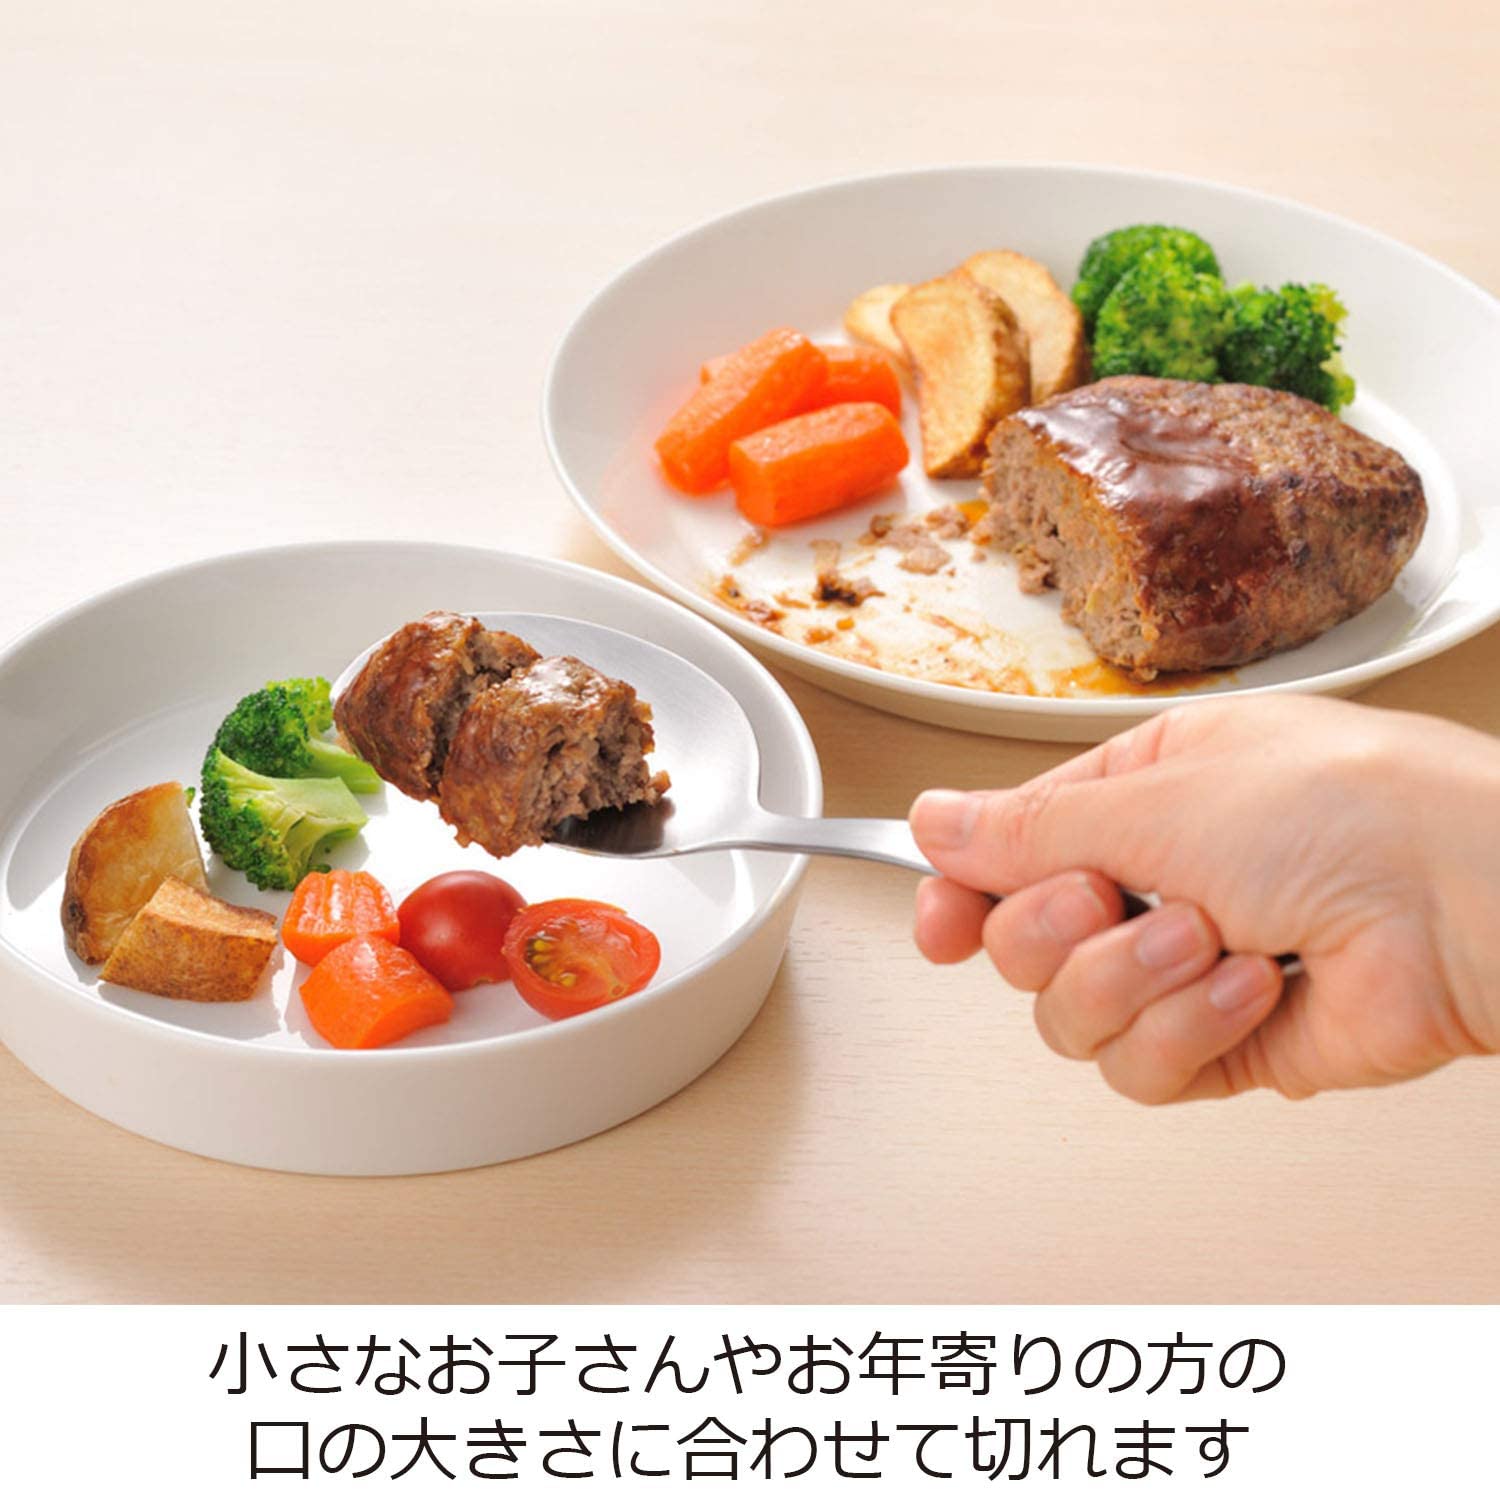 【預購】日本製 AUX 帶鋸齒牛排湯匙 - Cnjpkitchen ❤️ 🇯🇵日本廚具 家居生活雜貨店